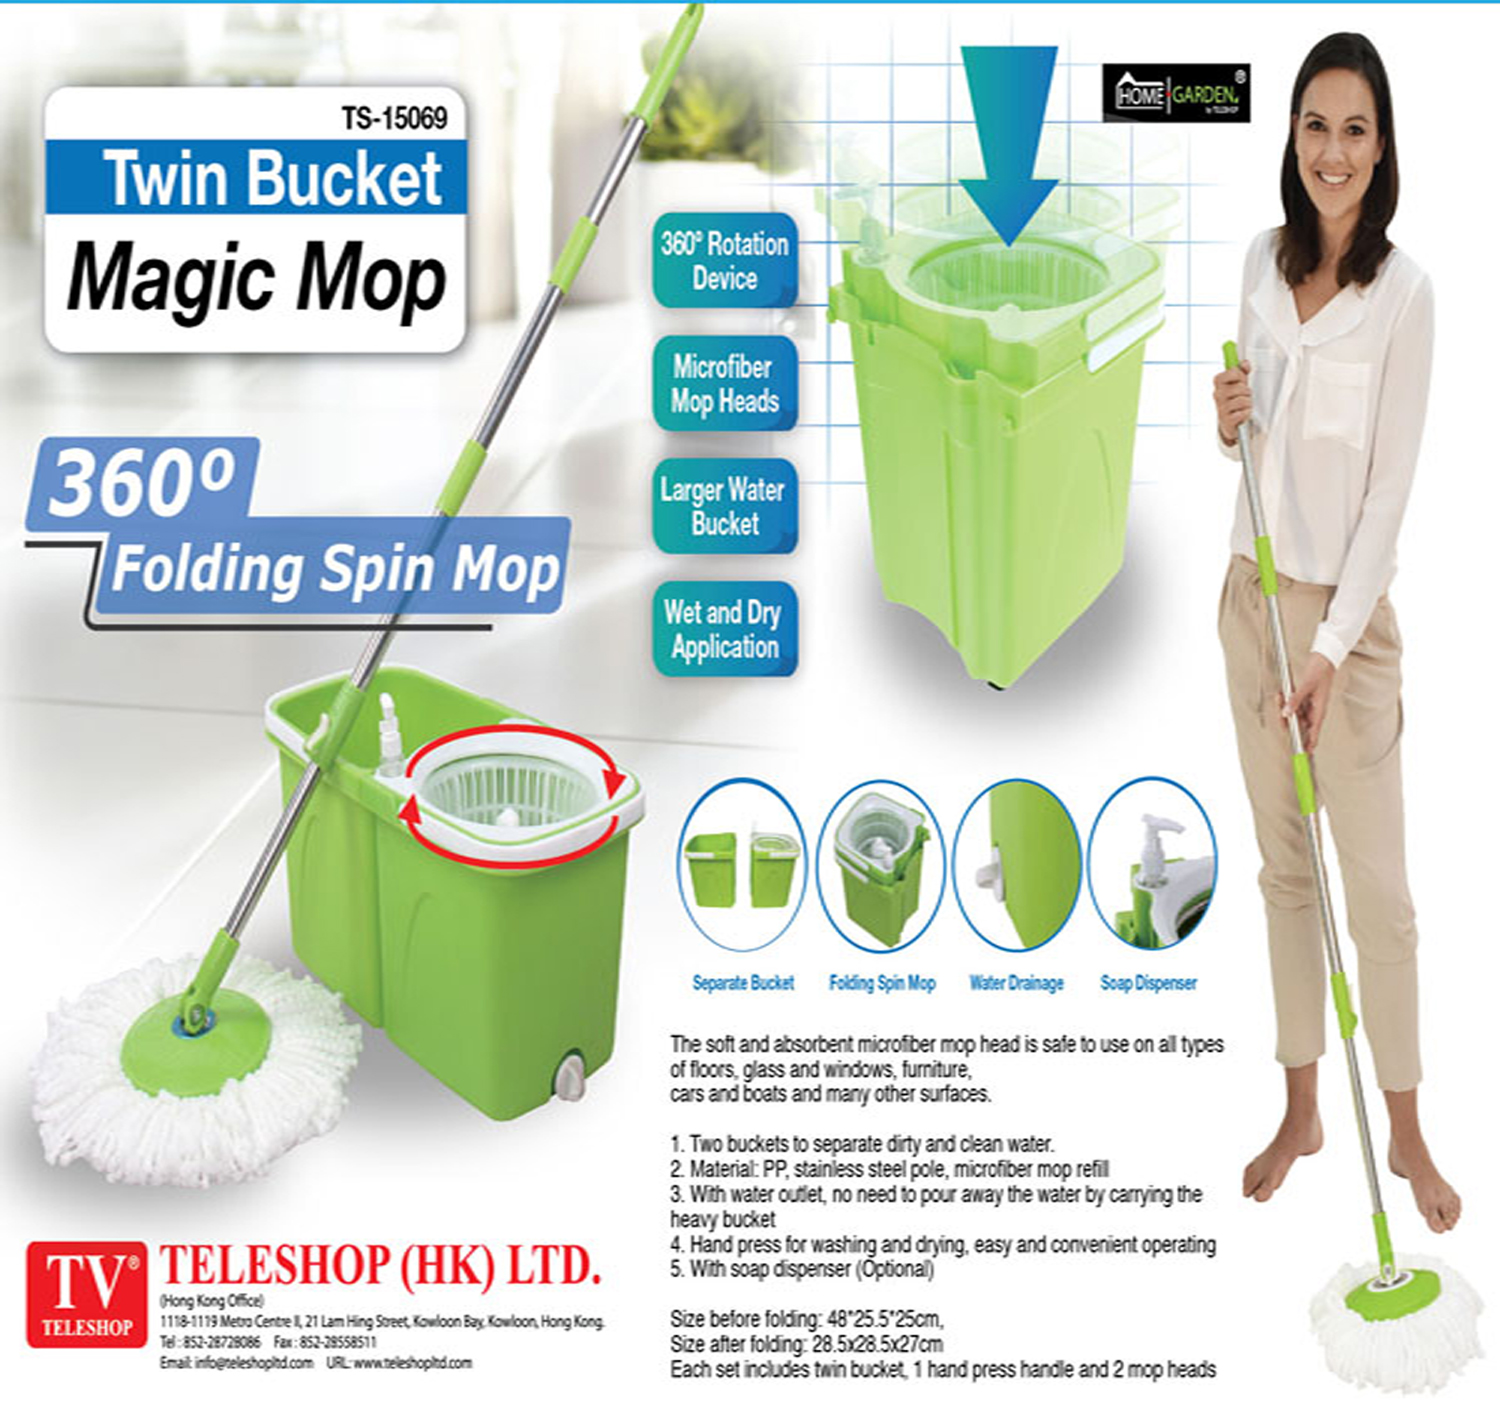 Twin Bucket Magic Mop